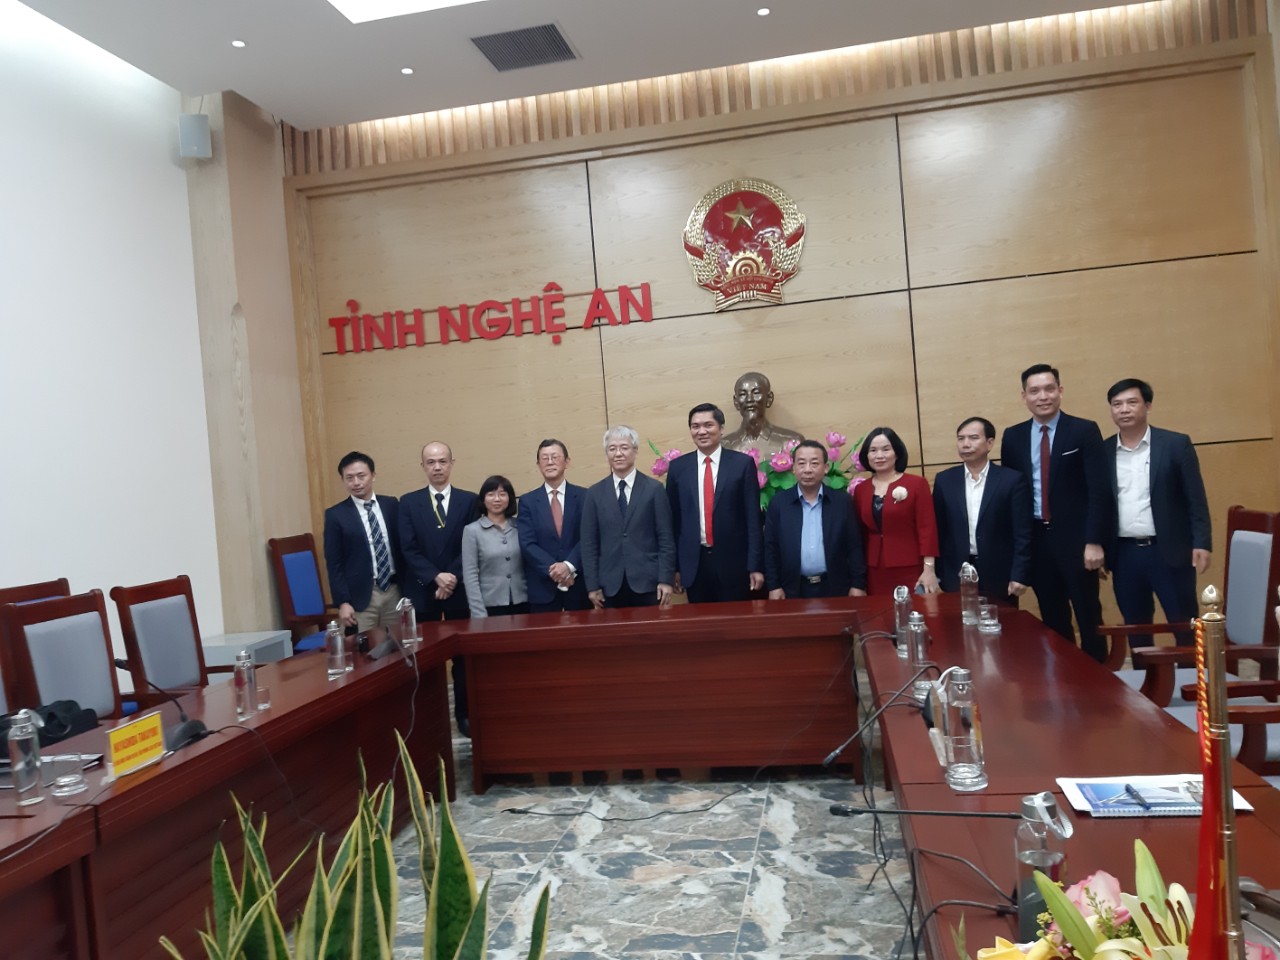 Đoàn Công tác JICA đến thăm và làm việc với tỉnh Nghệ An về thúc đẩy chuỗi giá trị sản phẩm nông nghiệp.